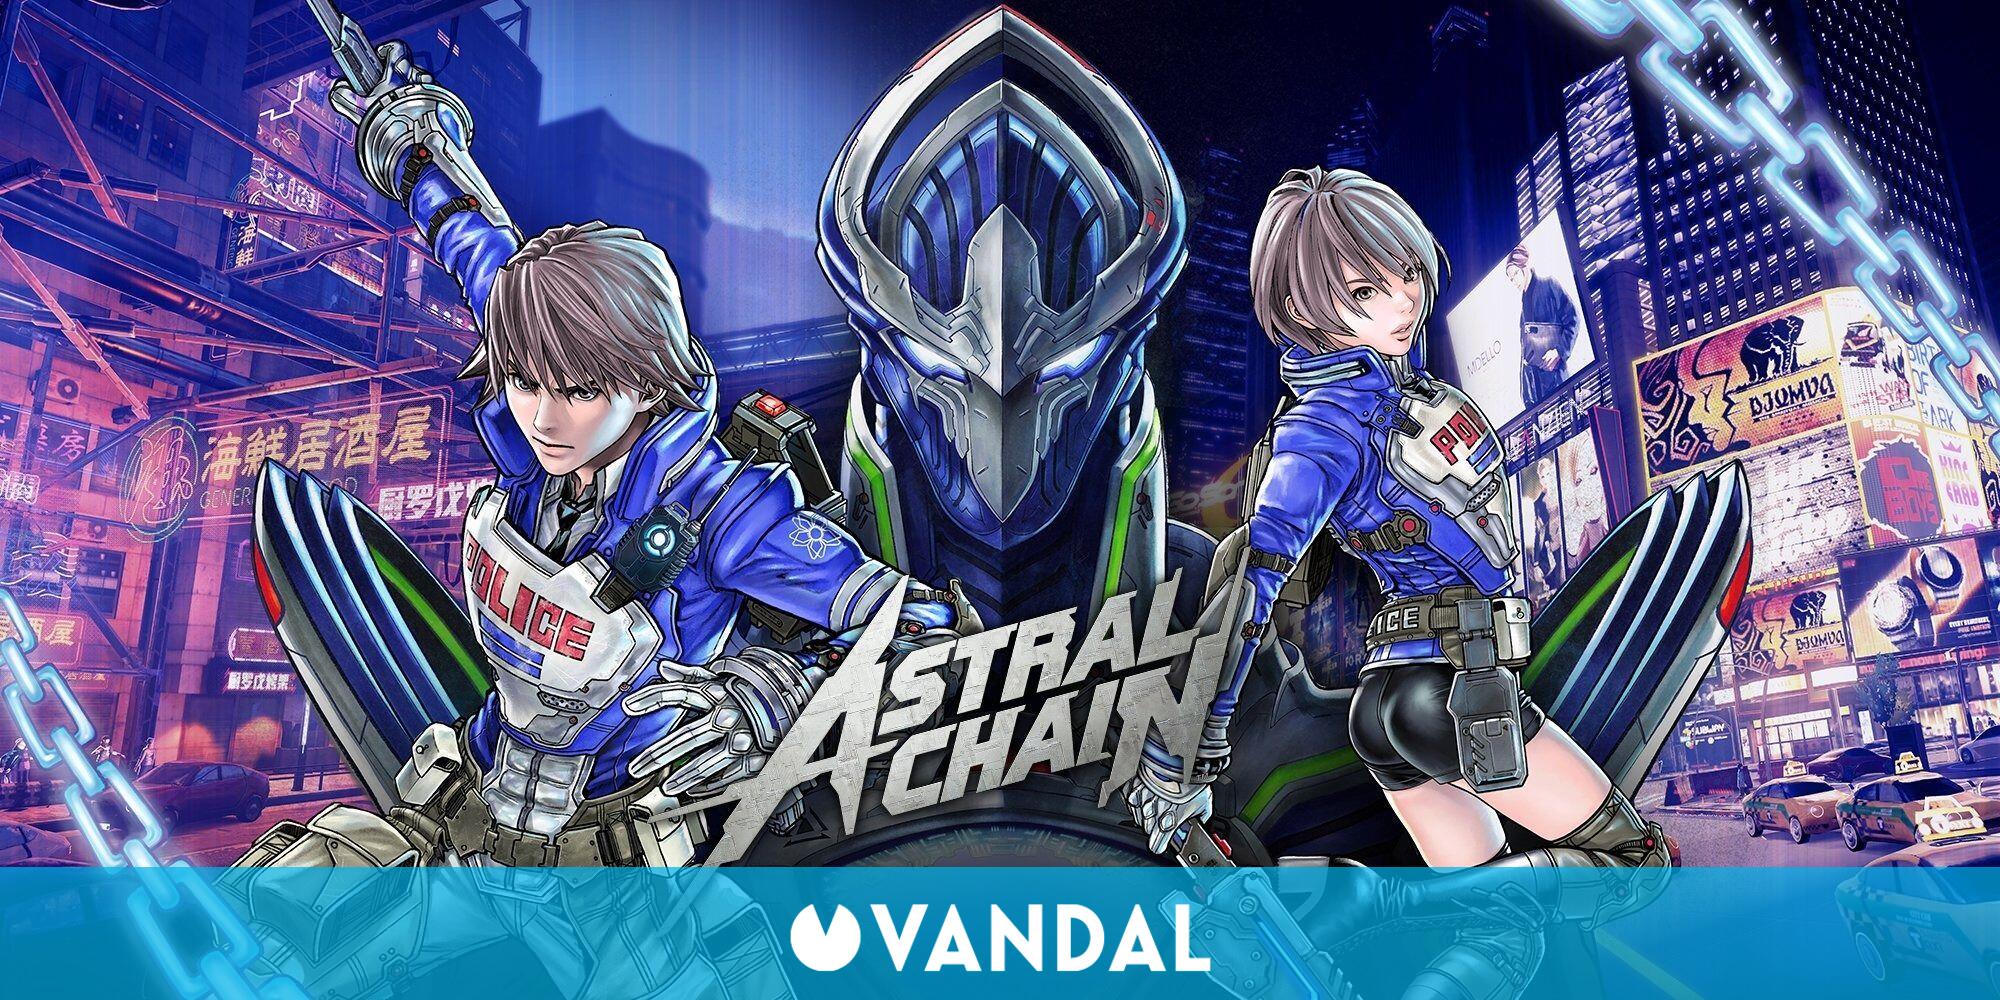 Hideki Kamiya las peticiones de que Astral se publique en PS4 - Vandal